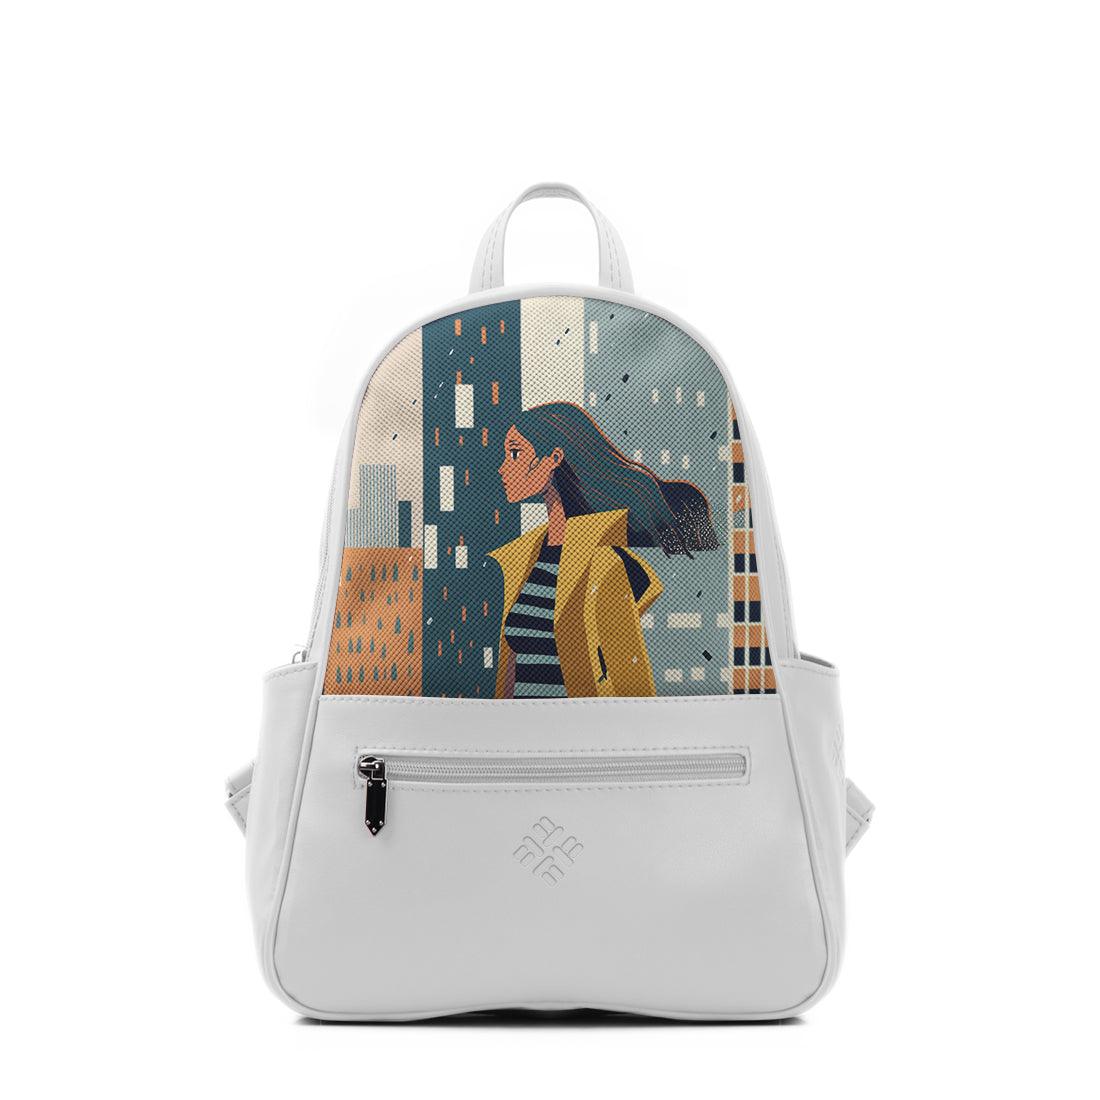 White Vivid Backpack City Girl - CANVAEGYPT